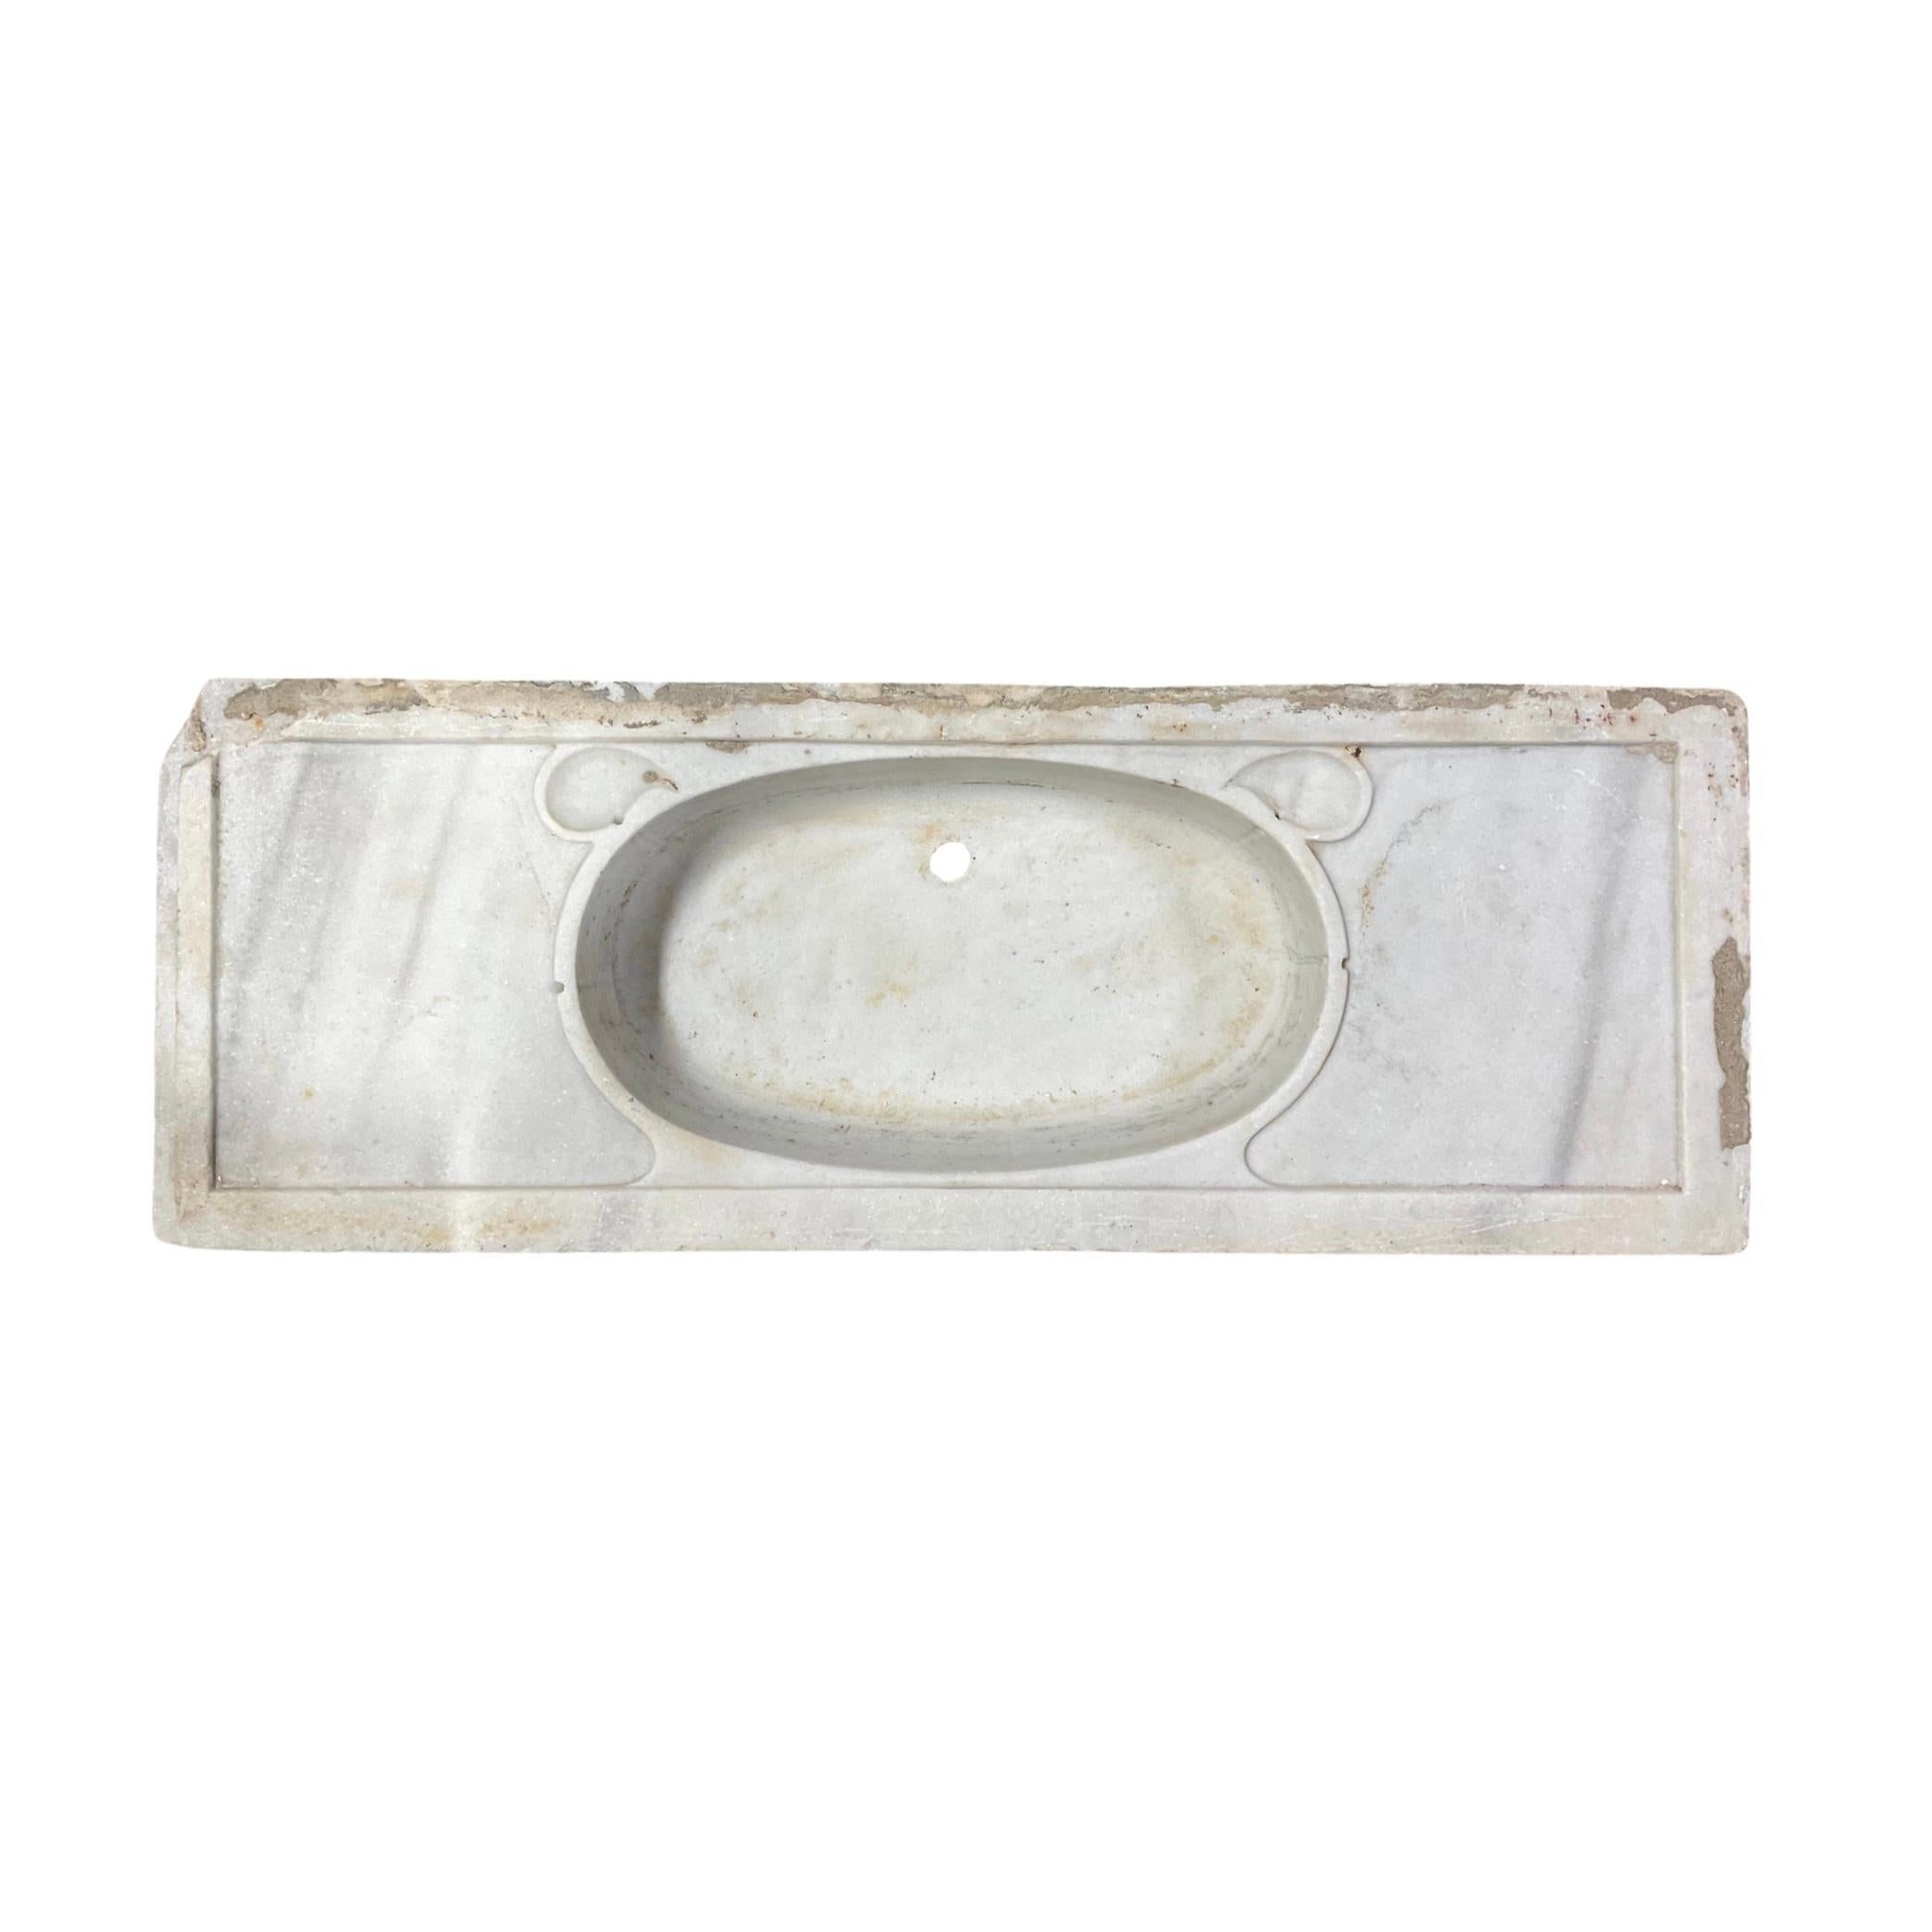 Dieses klassische französische Waschbecken aus weißem Carrara-Marmor aus dem 18. Jahrhundert verleiht jedem Badezimmer einen Hauch von Eleganz. Aus Carrara-Marmor gefertigt und mit einer vorgebohrten Öffnung für den Abfluss versehen, bietet dieses